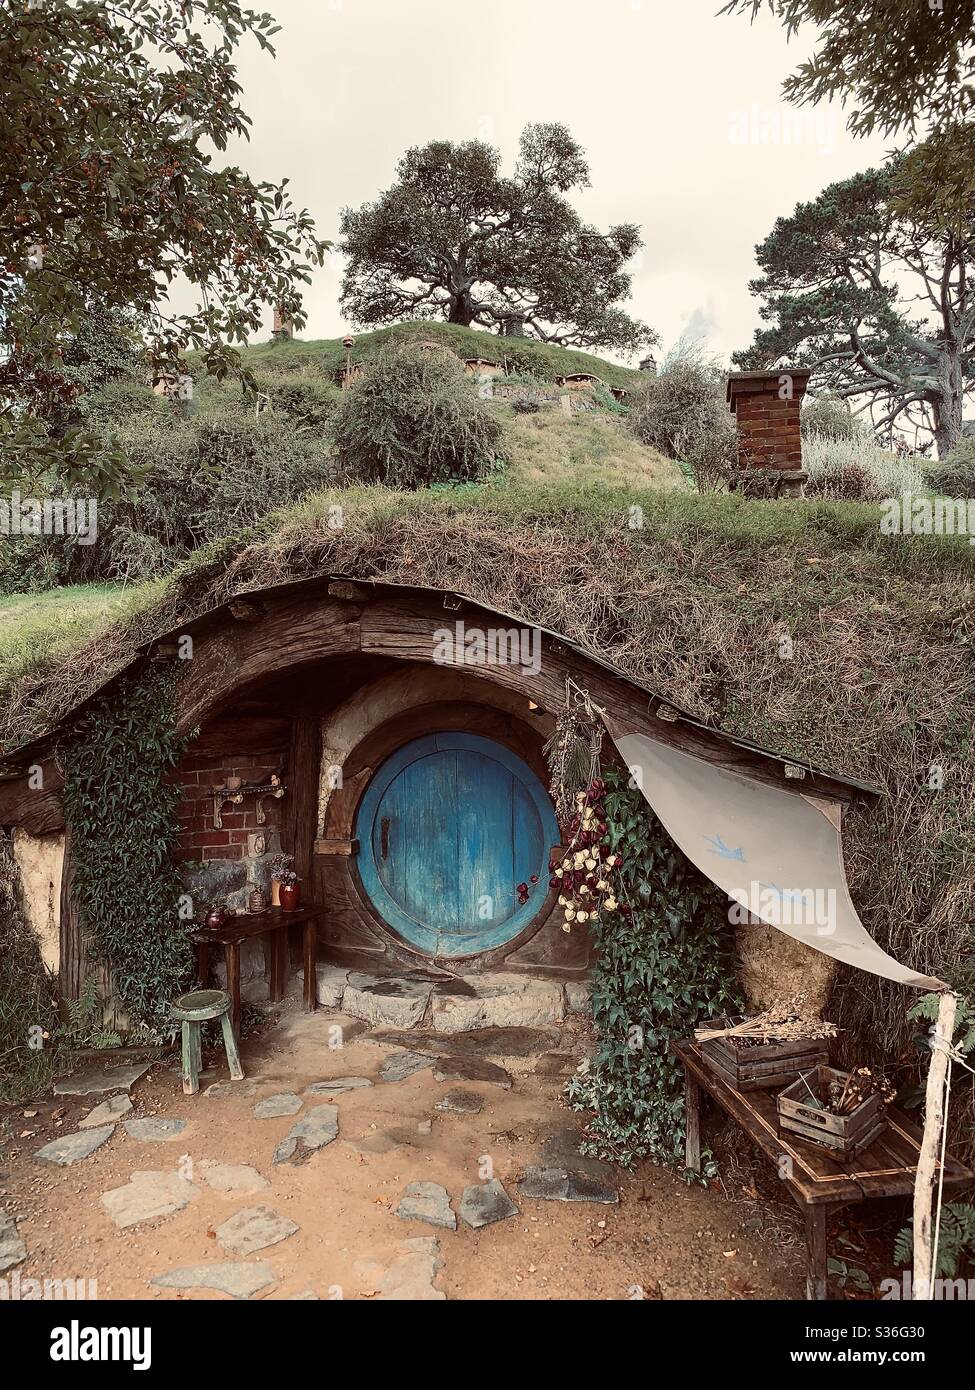 Hobbiton. Bucólico lugar en Nueva Zelanda donde viven los hobbits de la Tierra Media. El Señor de los anillos de cine. Puerta azul de forma redonda rodeada de árboles Foto de stock